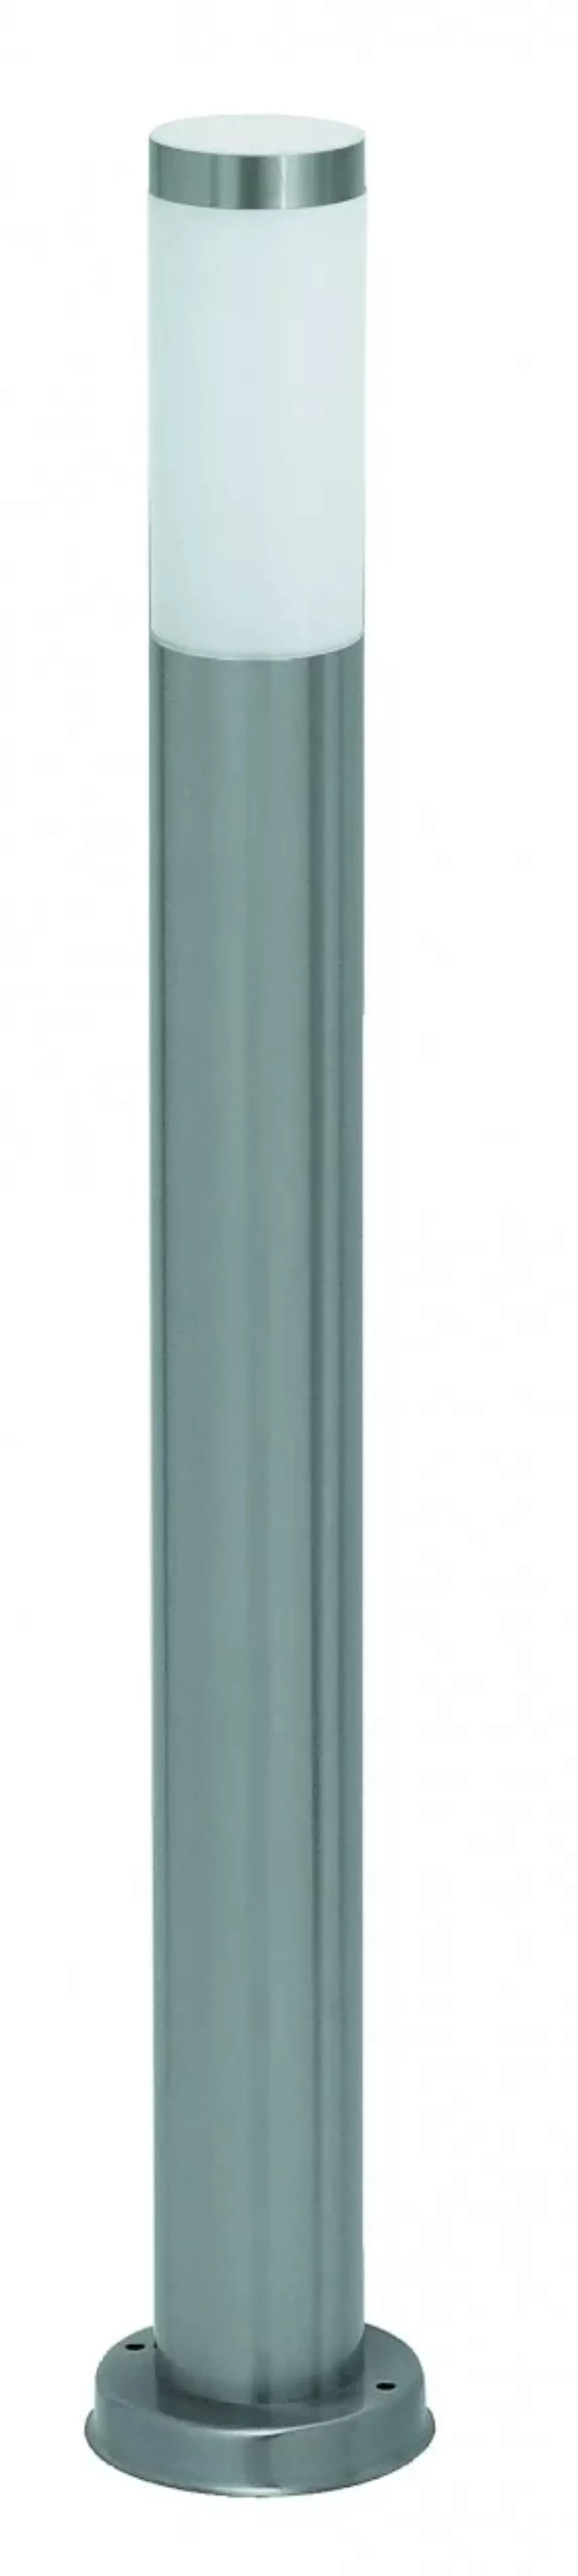 Wegeleuchte Chromfarben Metall E27 25W 65cm Inox torch günstig online kaufen